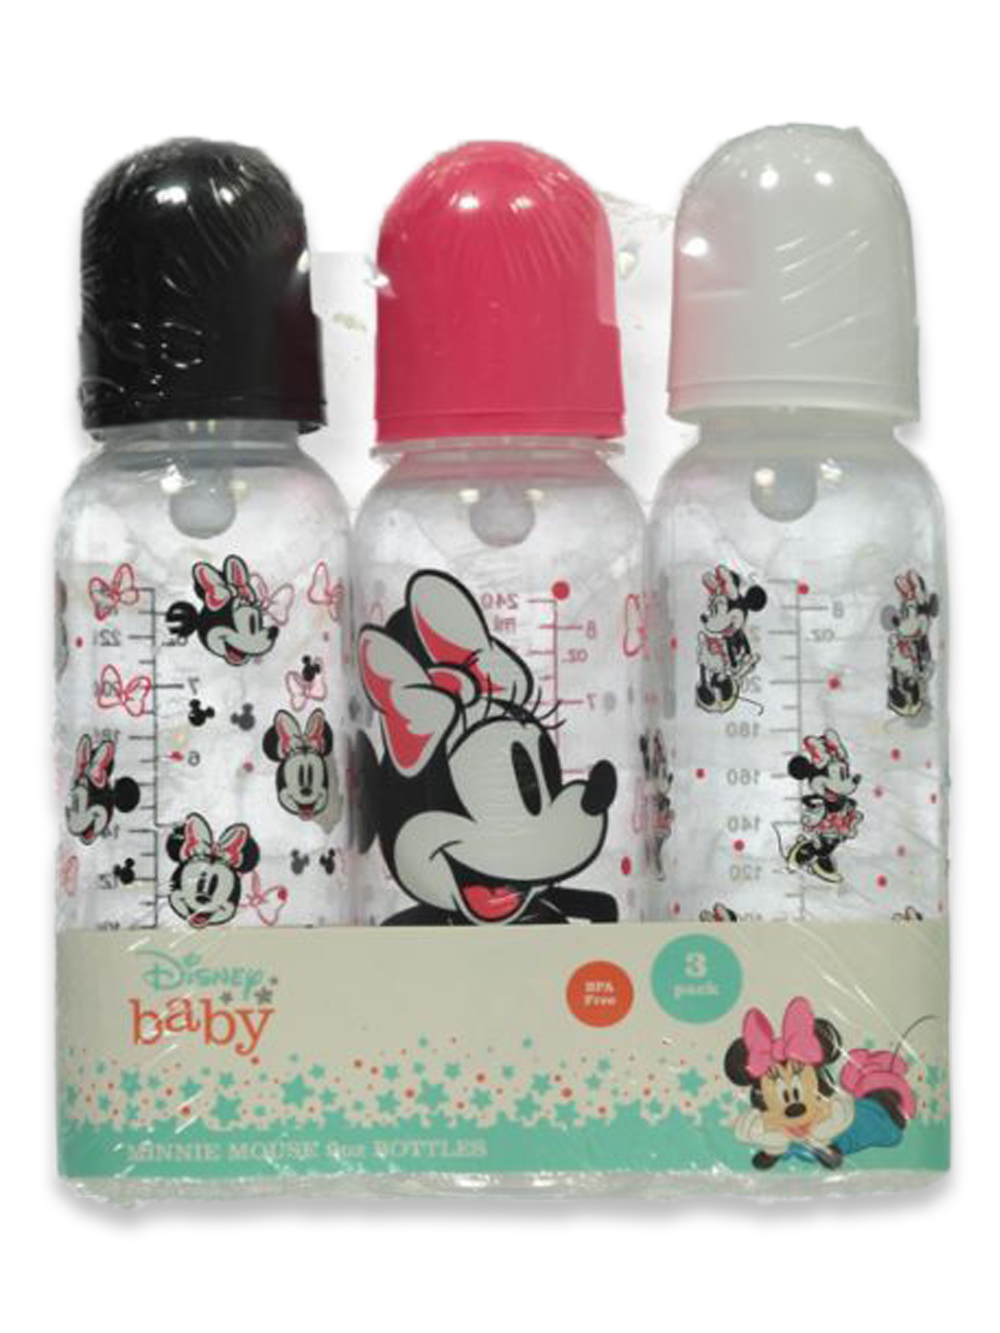  Disney Bundle Minnie Mouse Plastic Water Bottle Set